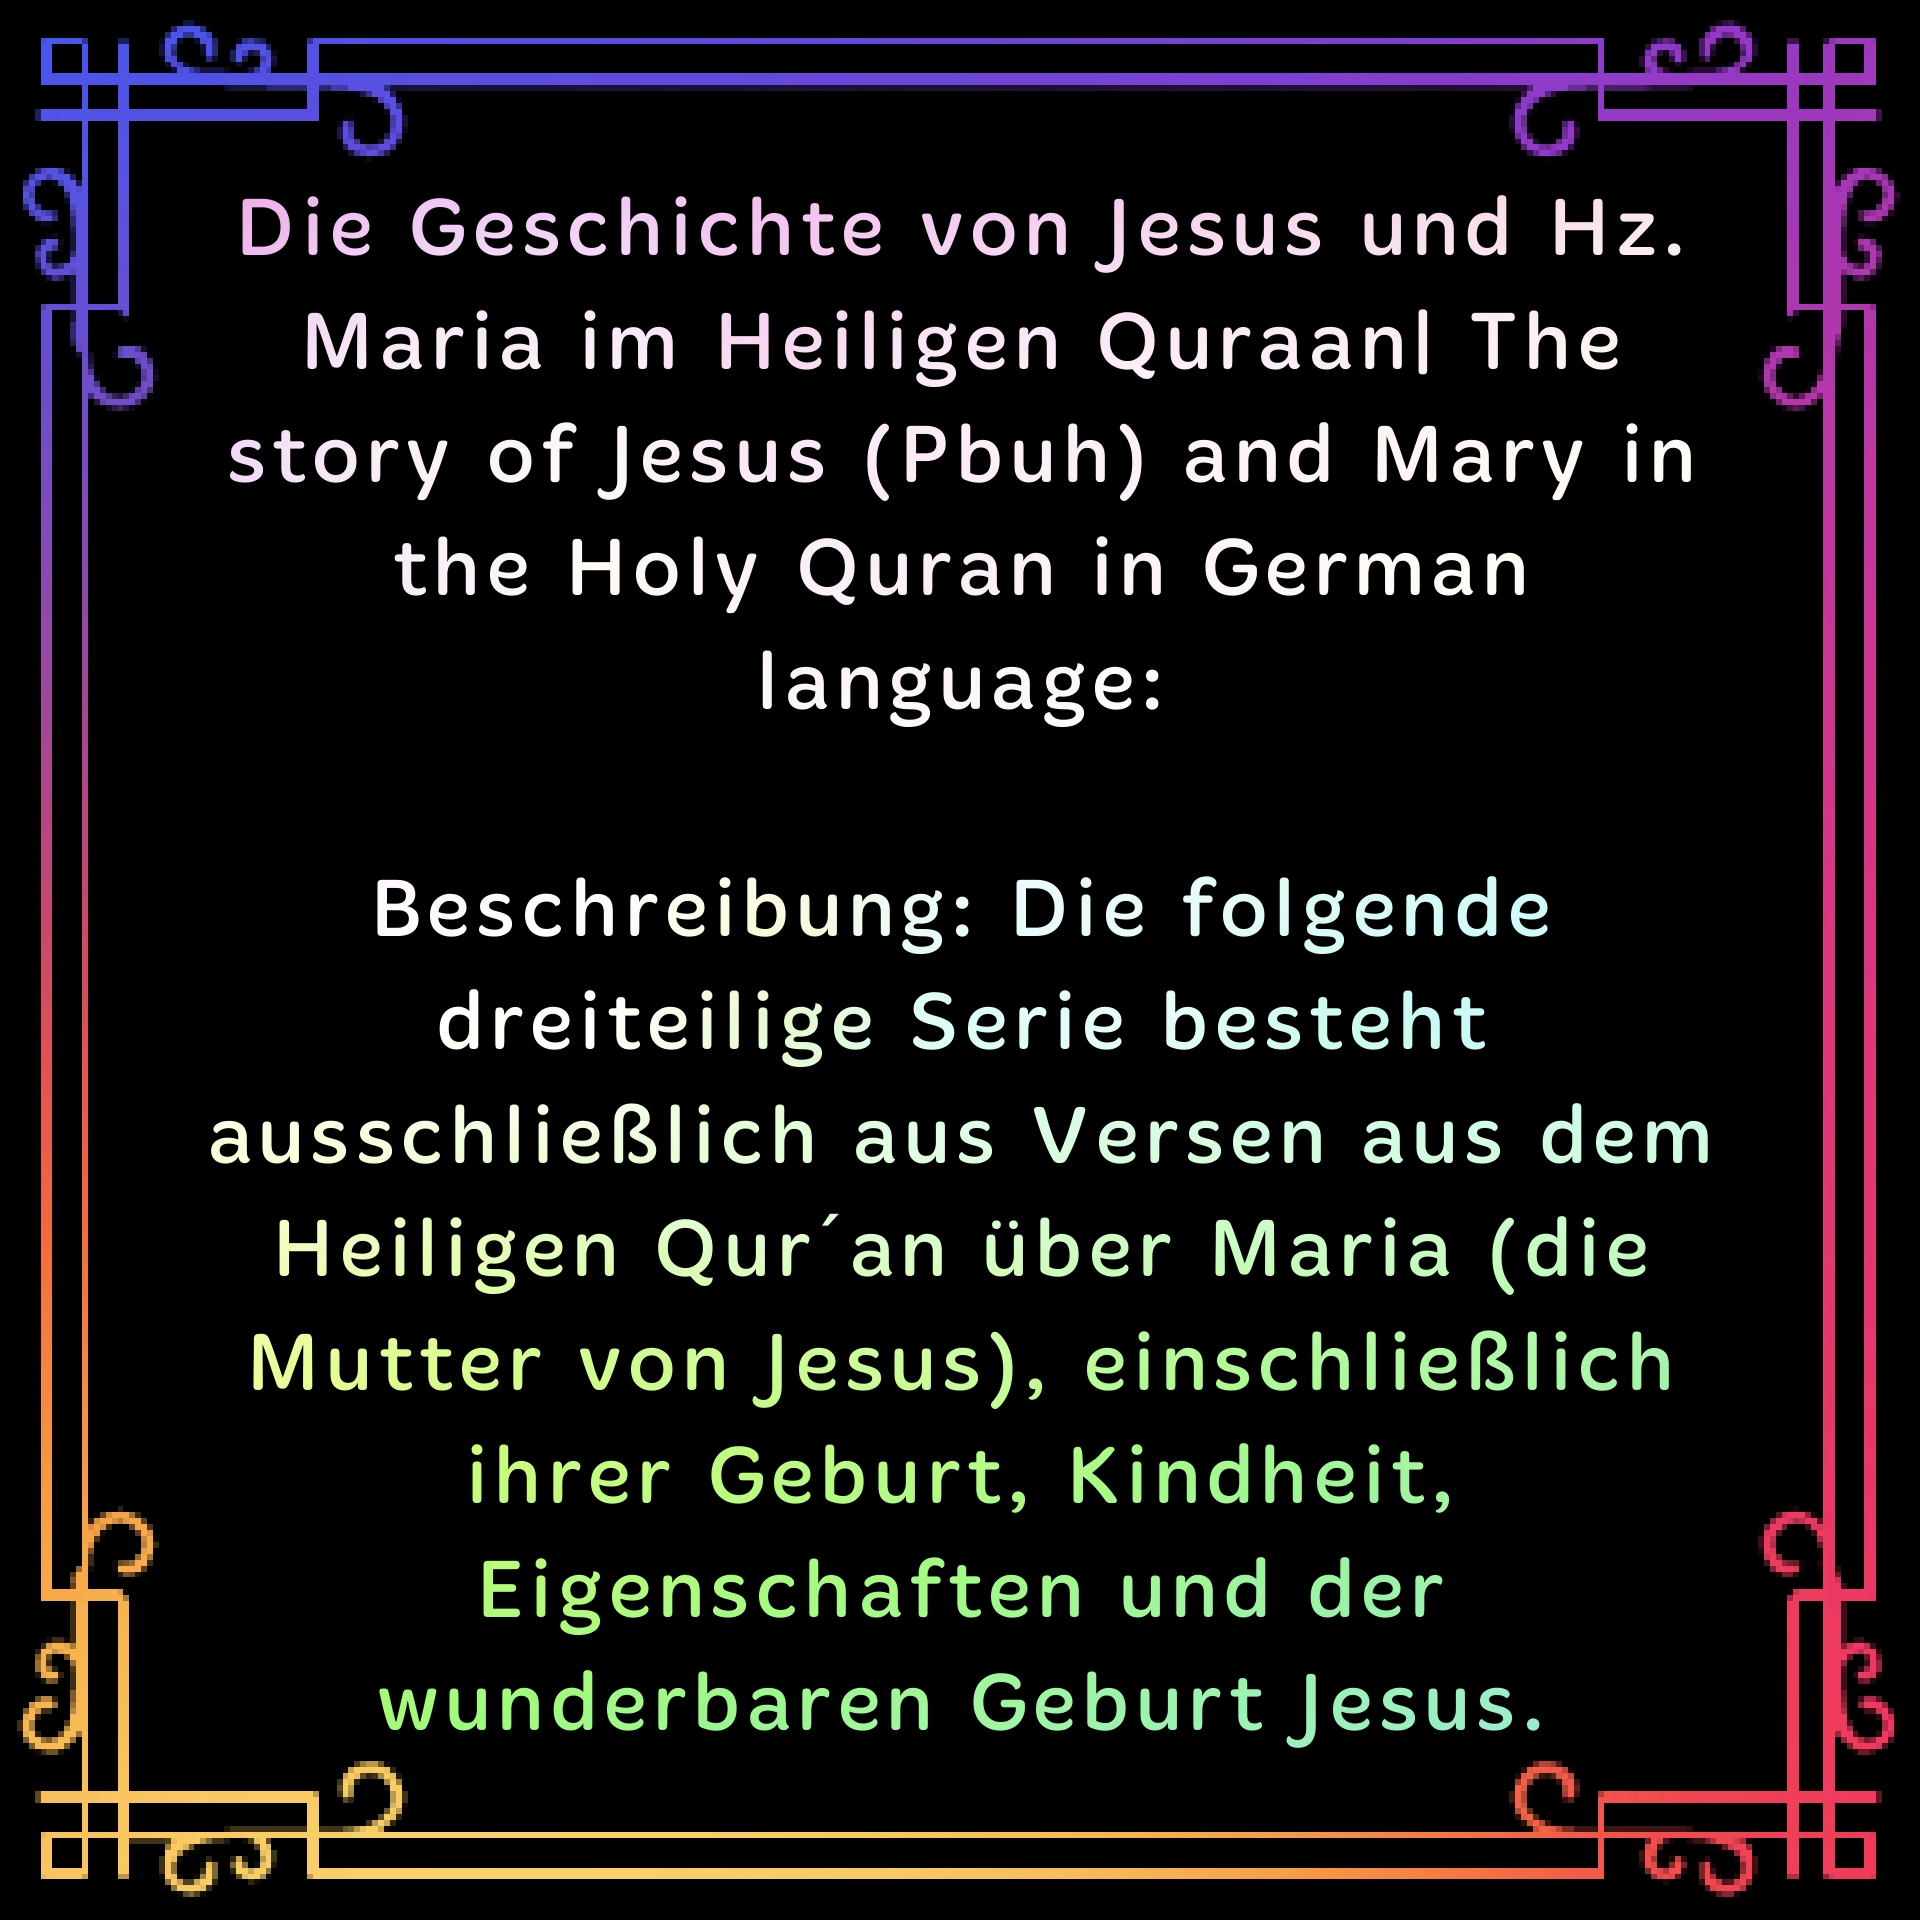 Die Geschichte von Jesus und Hz. Maria im Heiligen Quraan | The story of Jesus (Pbuh) and Mary in the Holy Quran German language